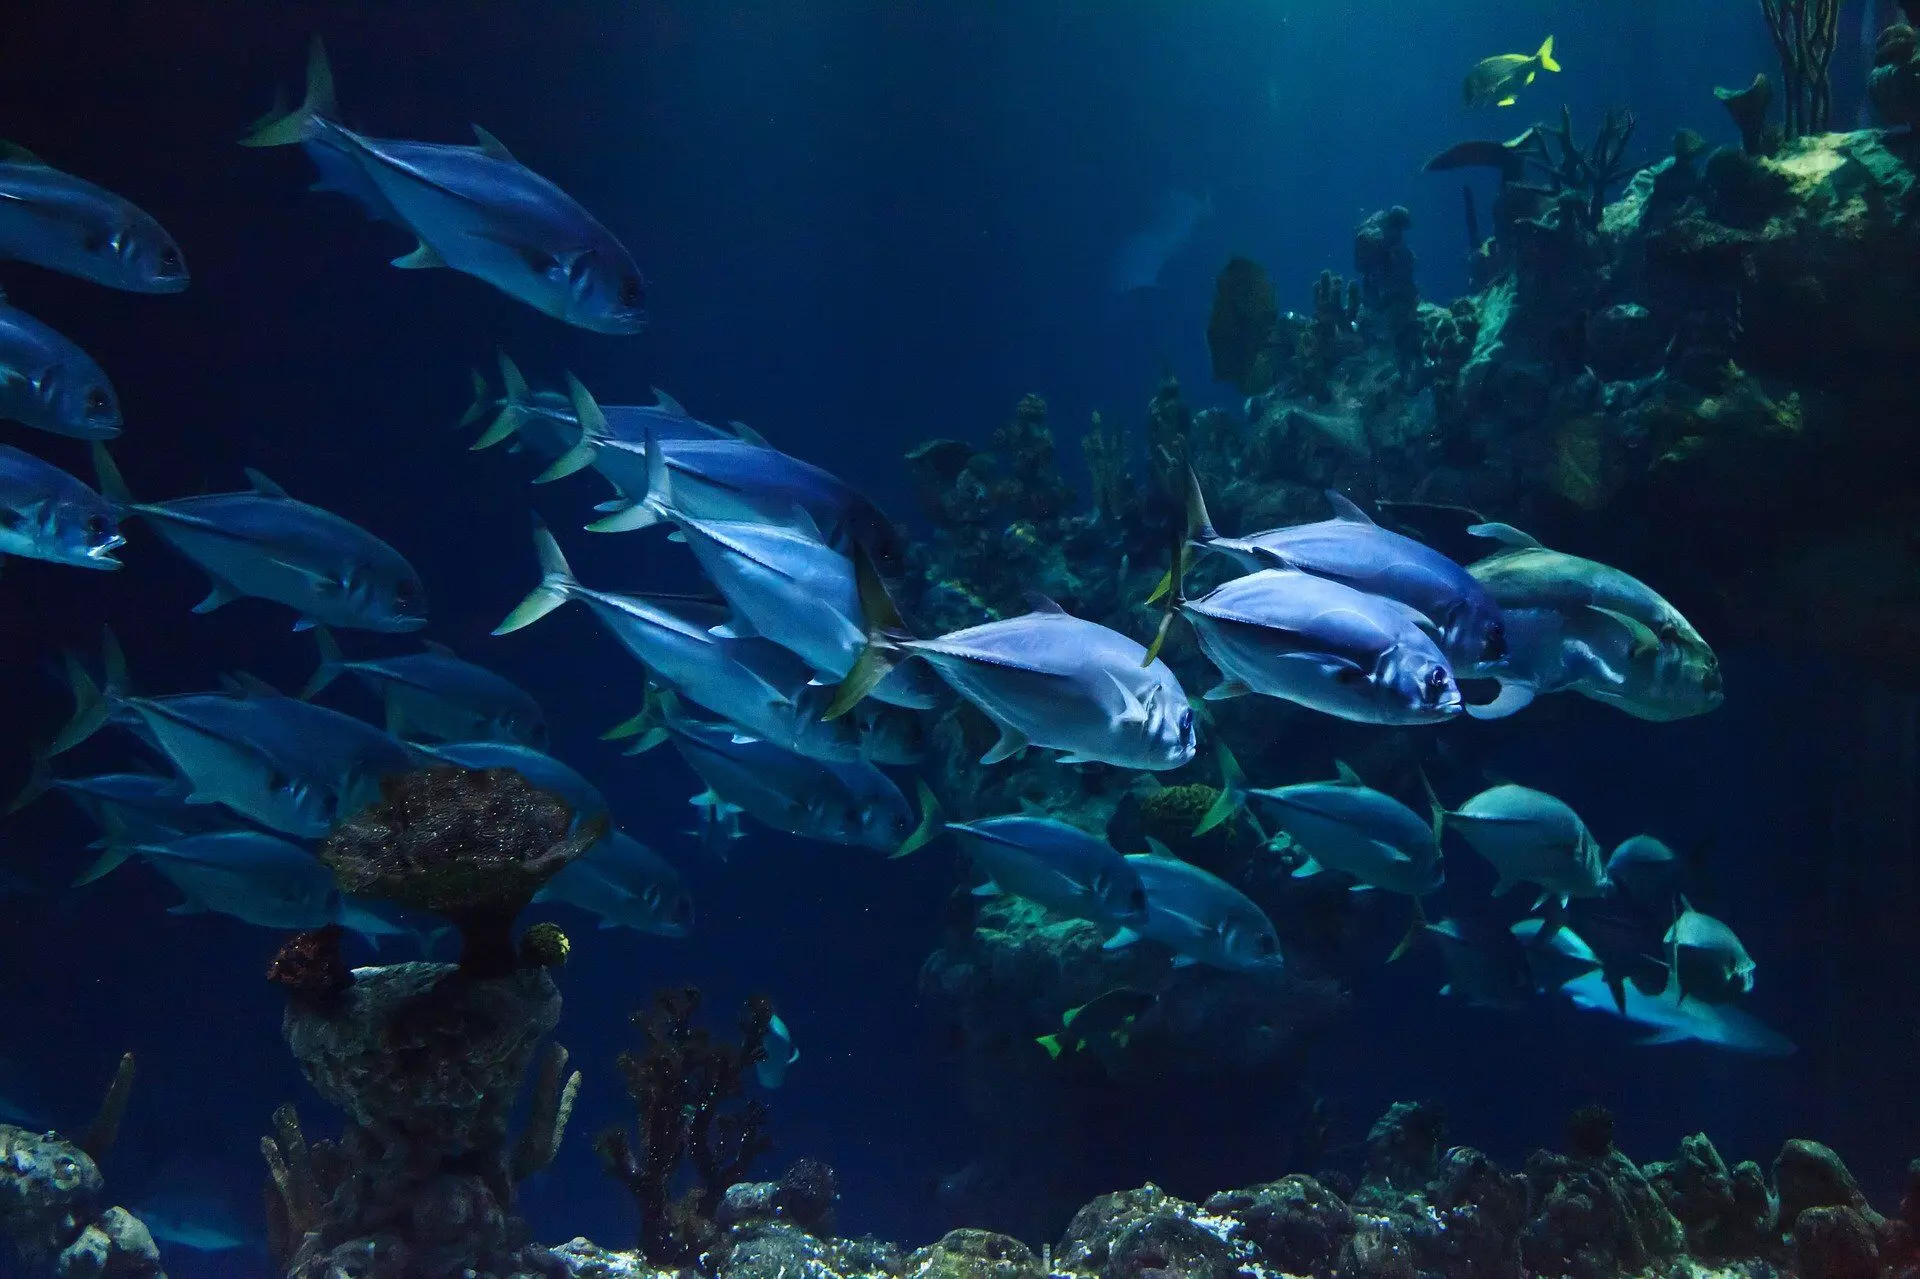 वैज्ञानिकों ने पता लगाया एक साथ कैसे तैरती हैं मछलियां